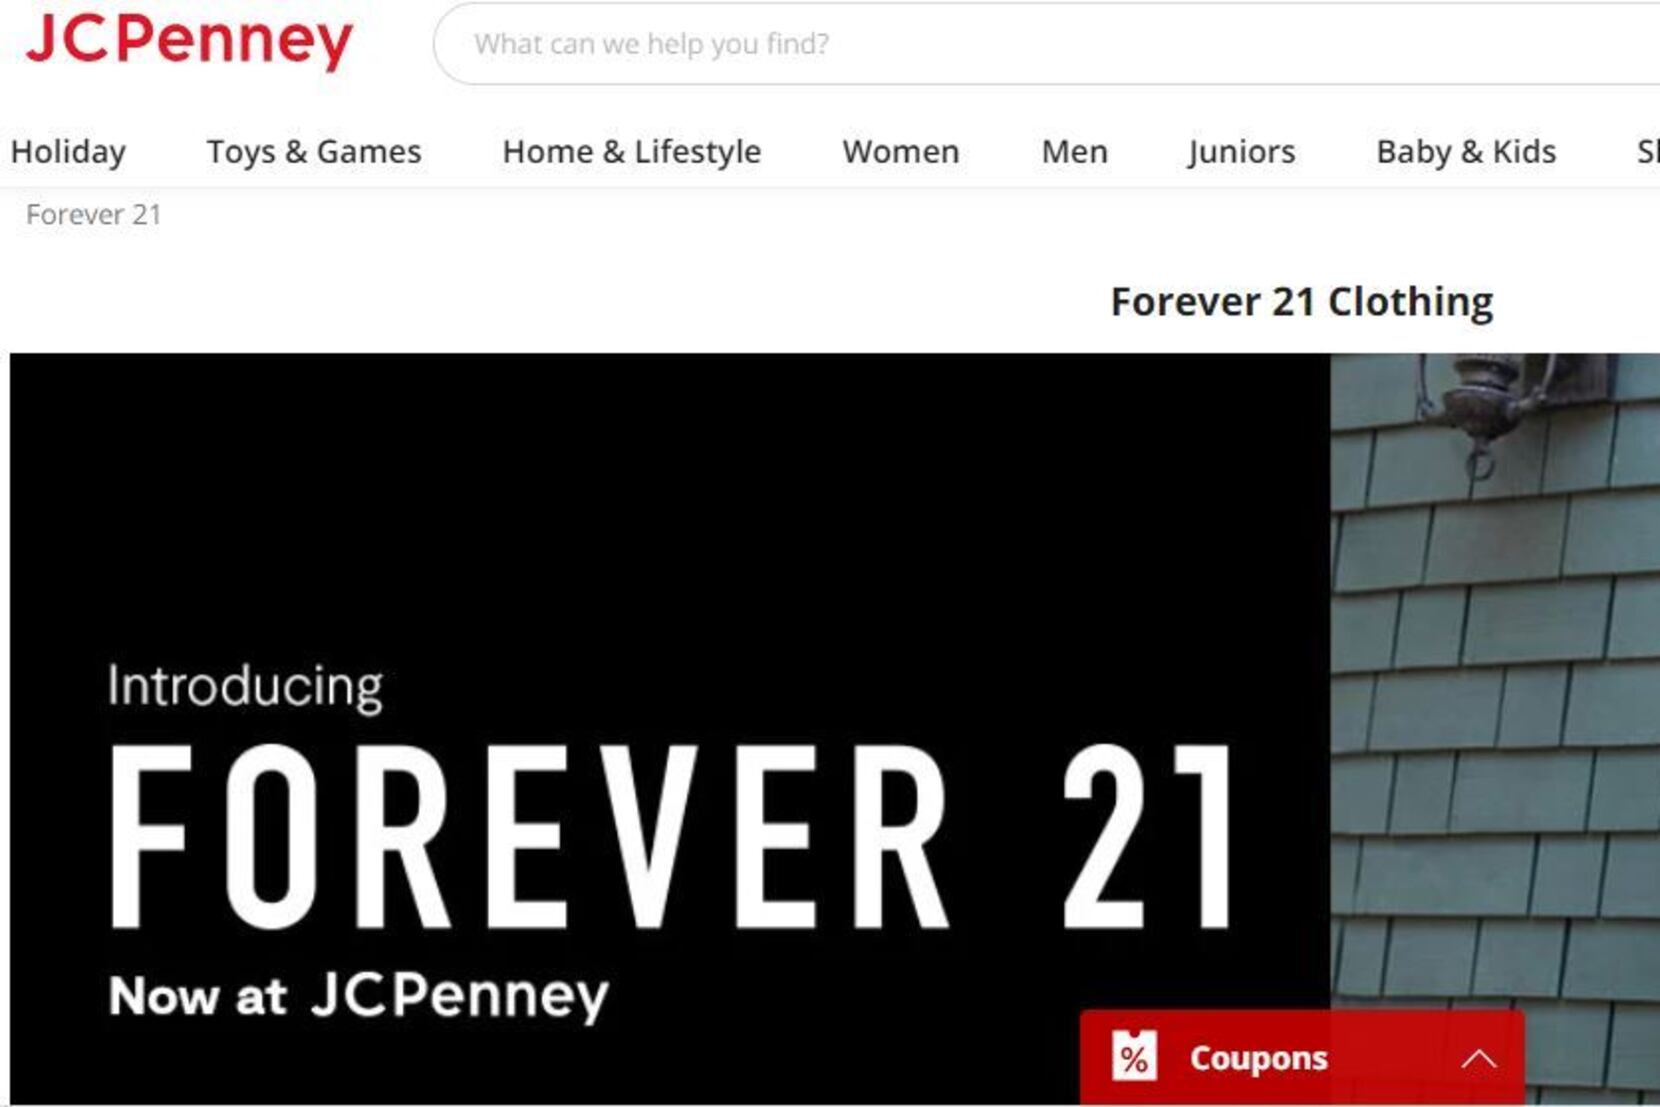 What's Forever 21 doing inside J.C. Penney?